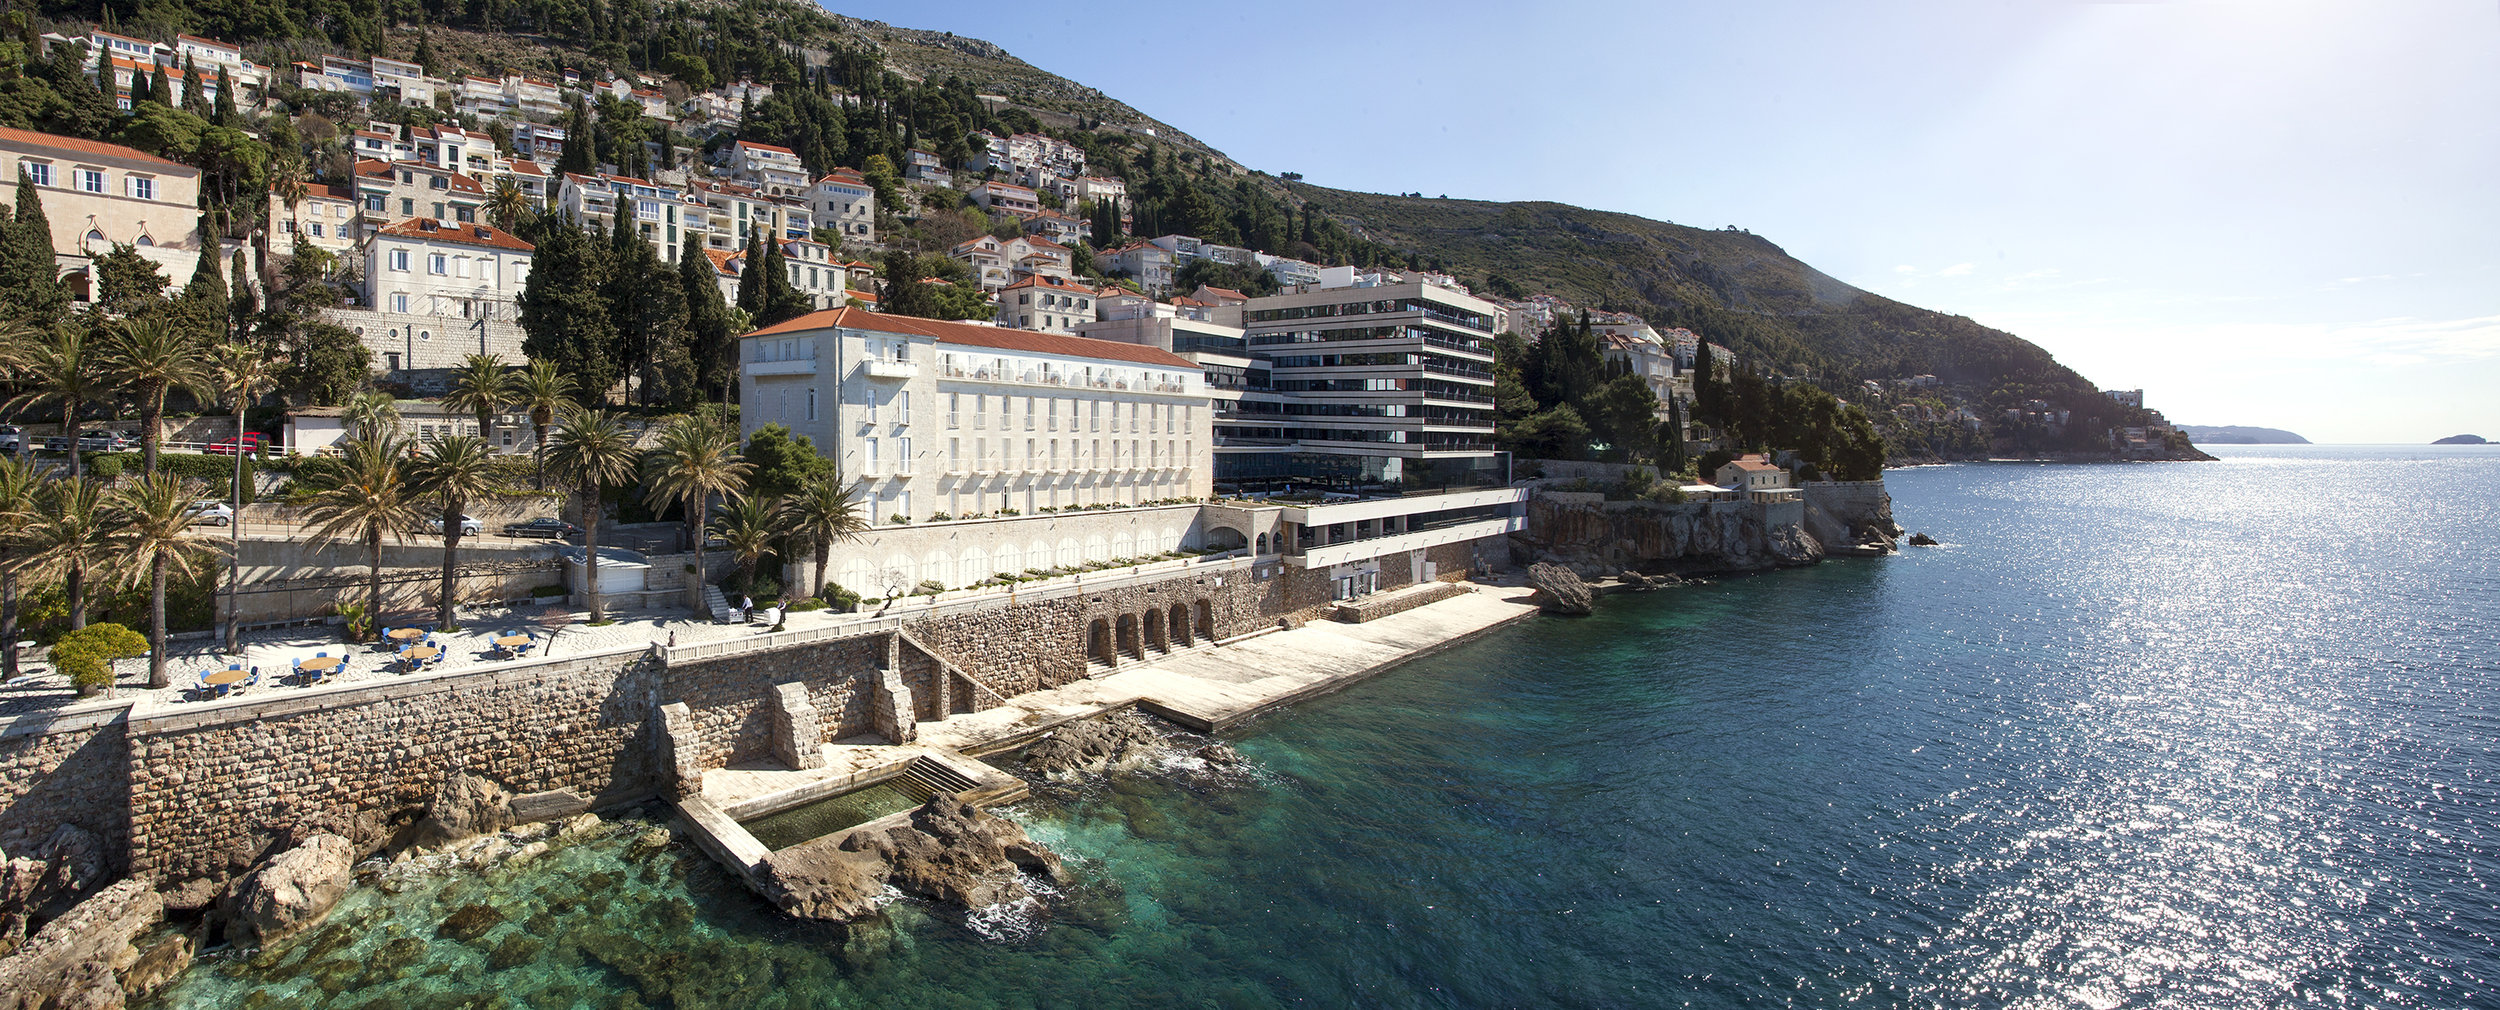 Croatia Hotels | Hotel Excelsior Dubrovnik